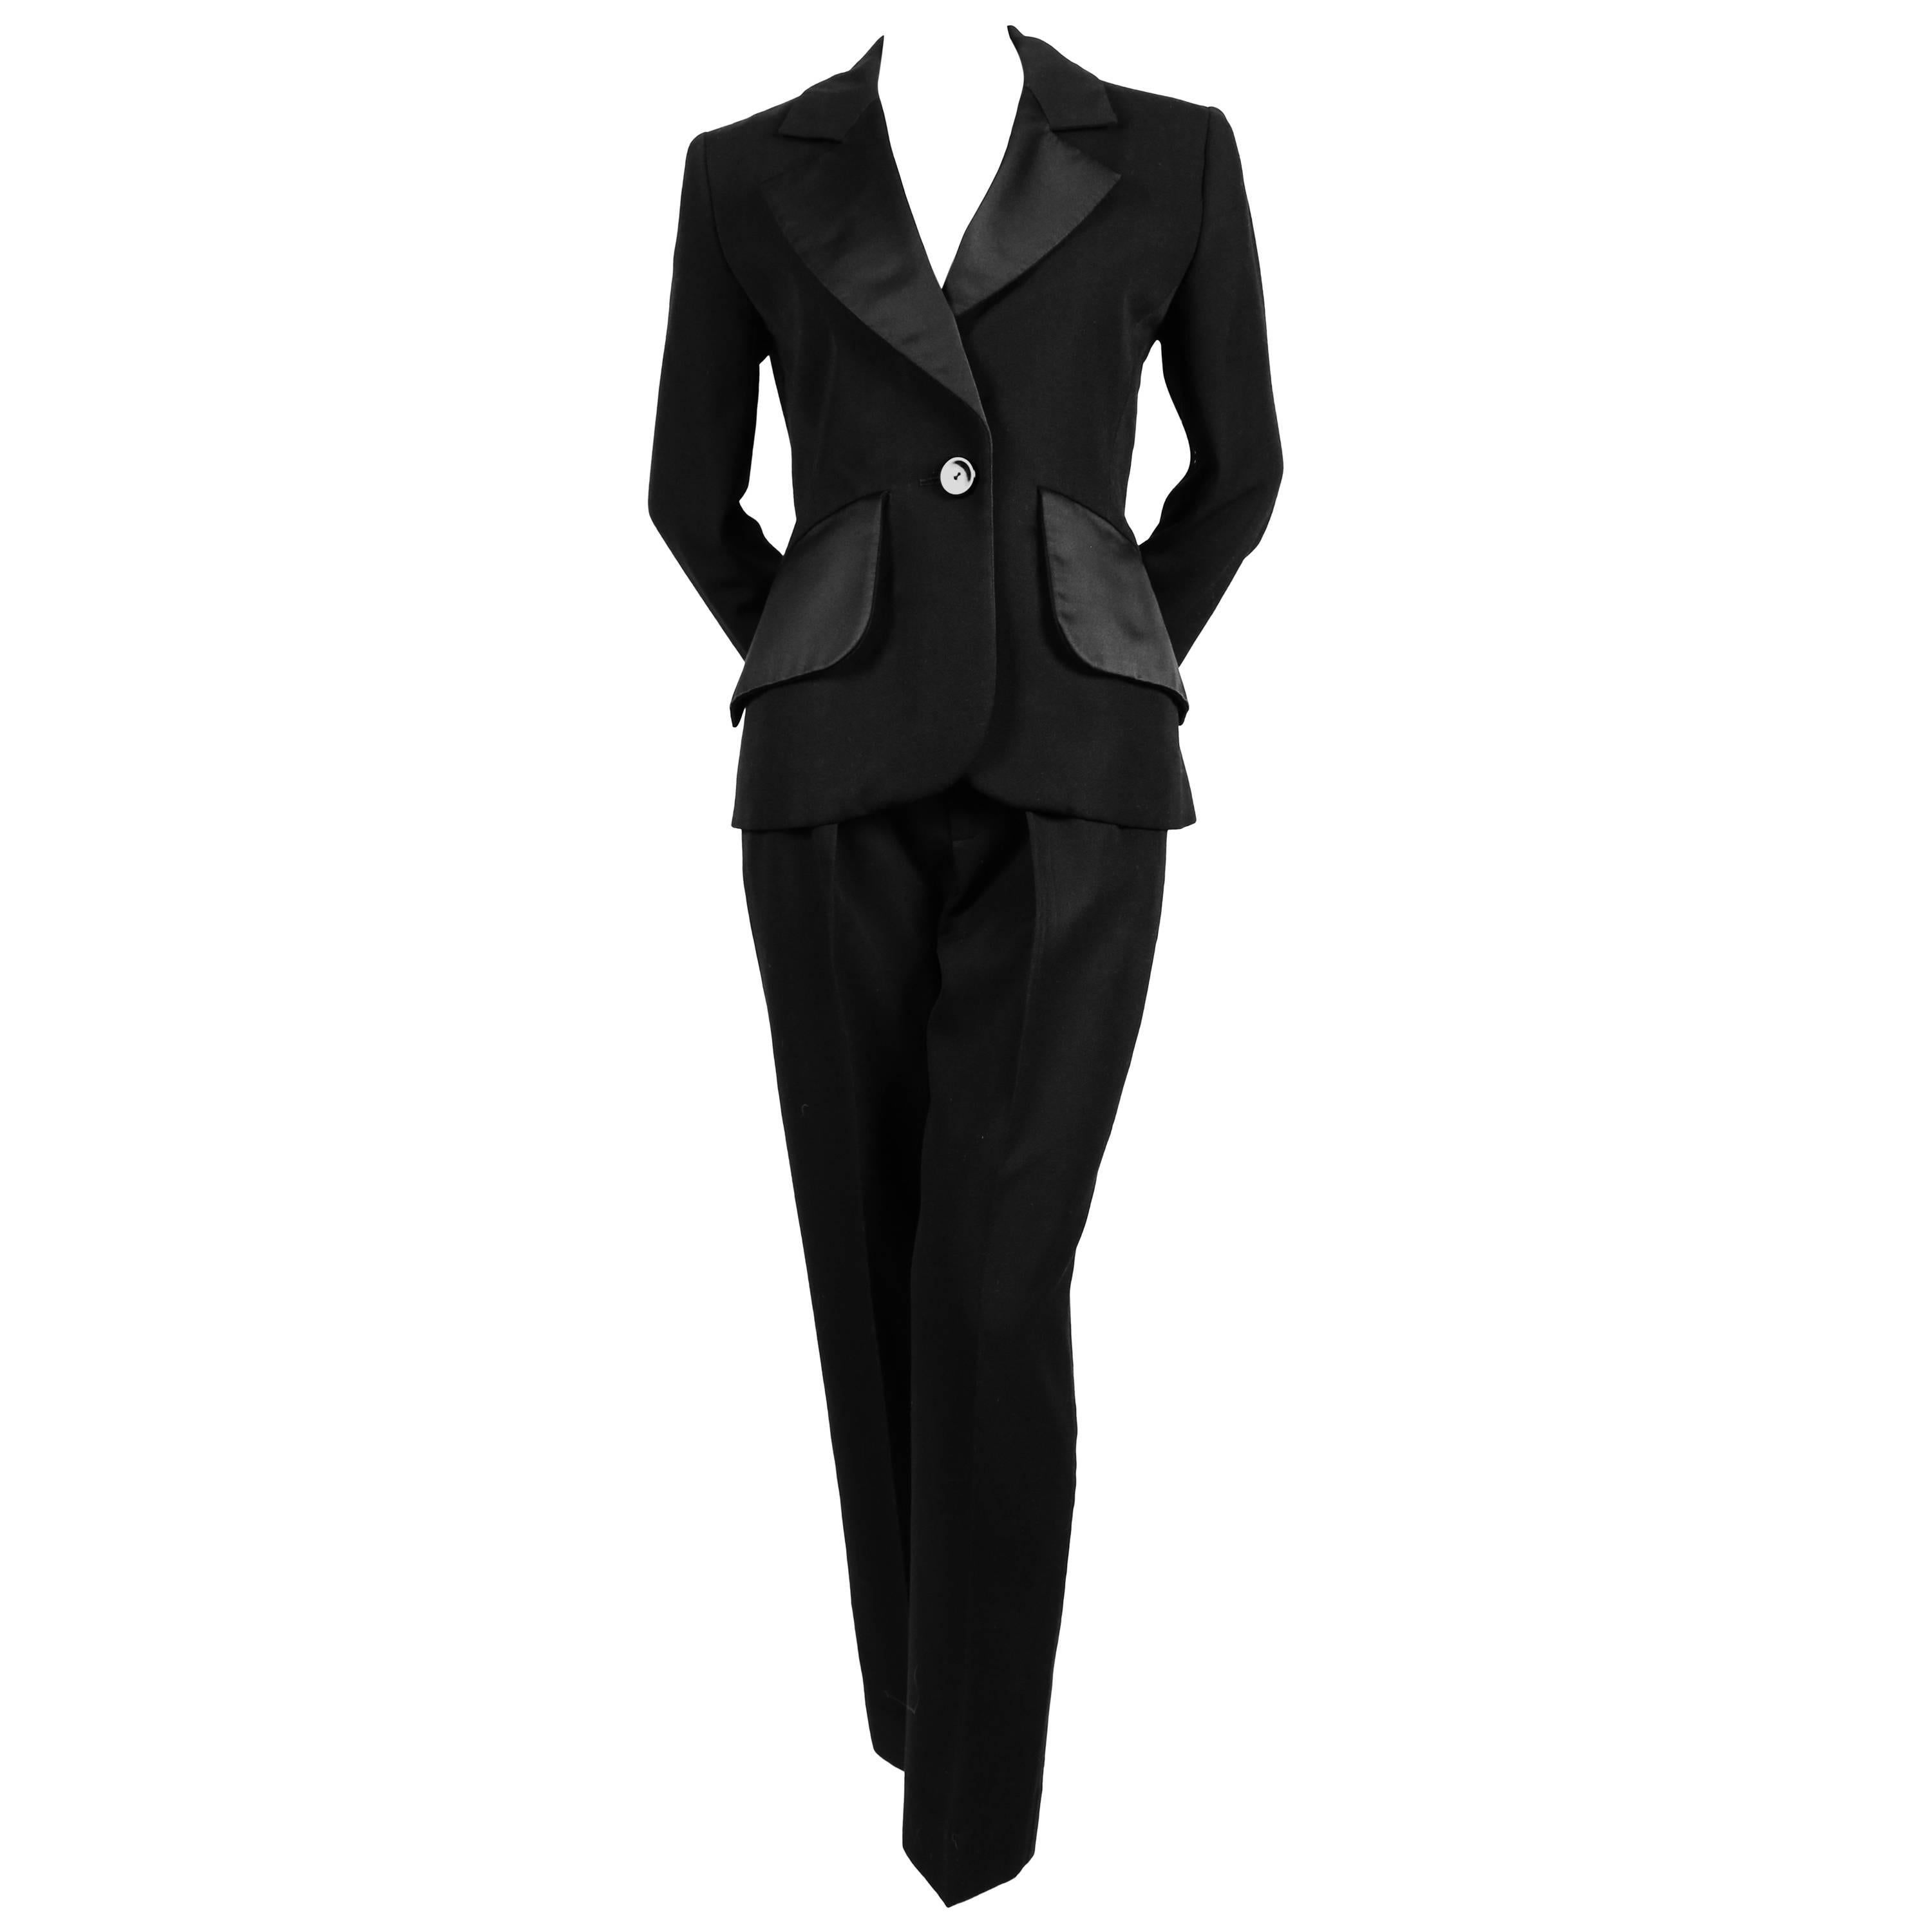 Iconic YVES SAINT LAURENT black 3 piece 'le smoking' suit